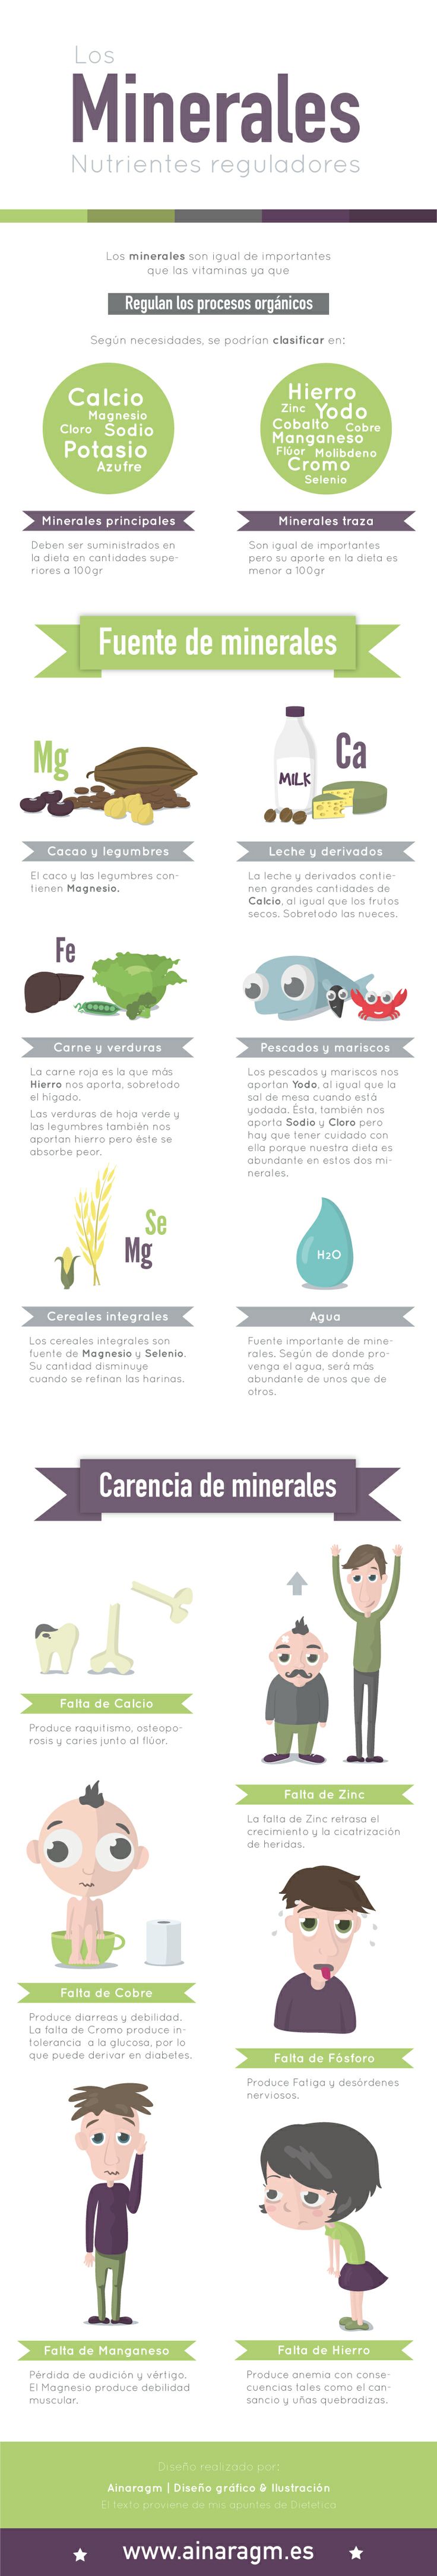 infografía minerales